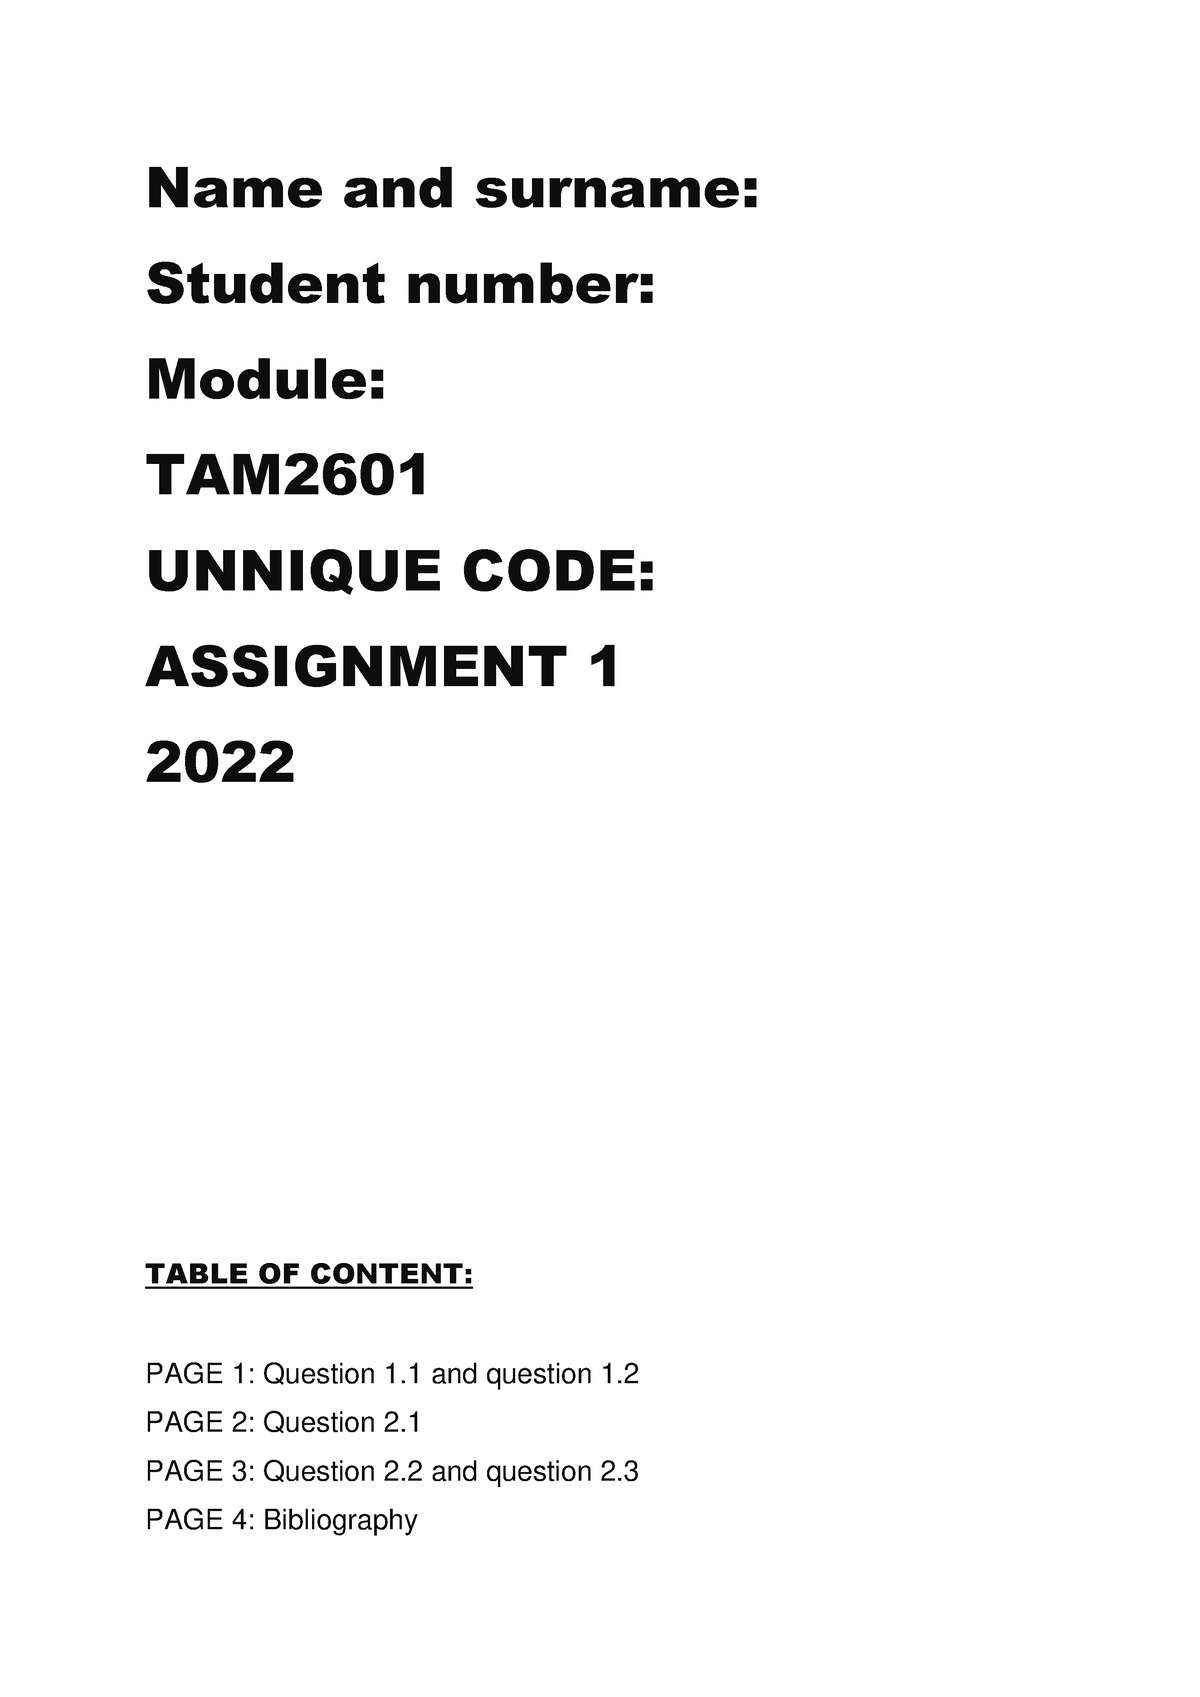 assignment 4 tam2601